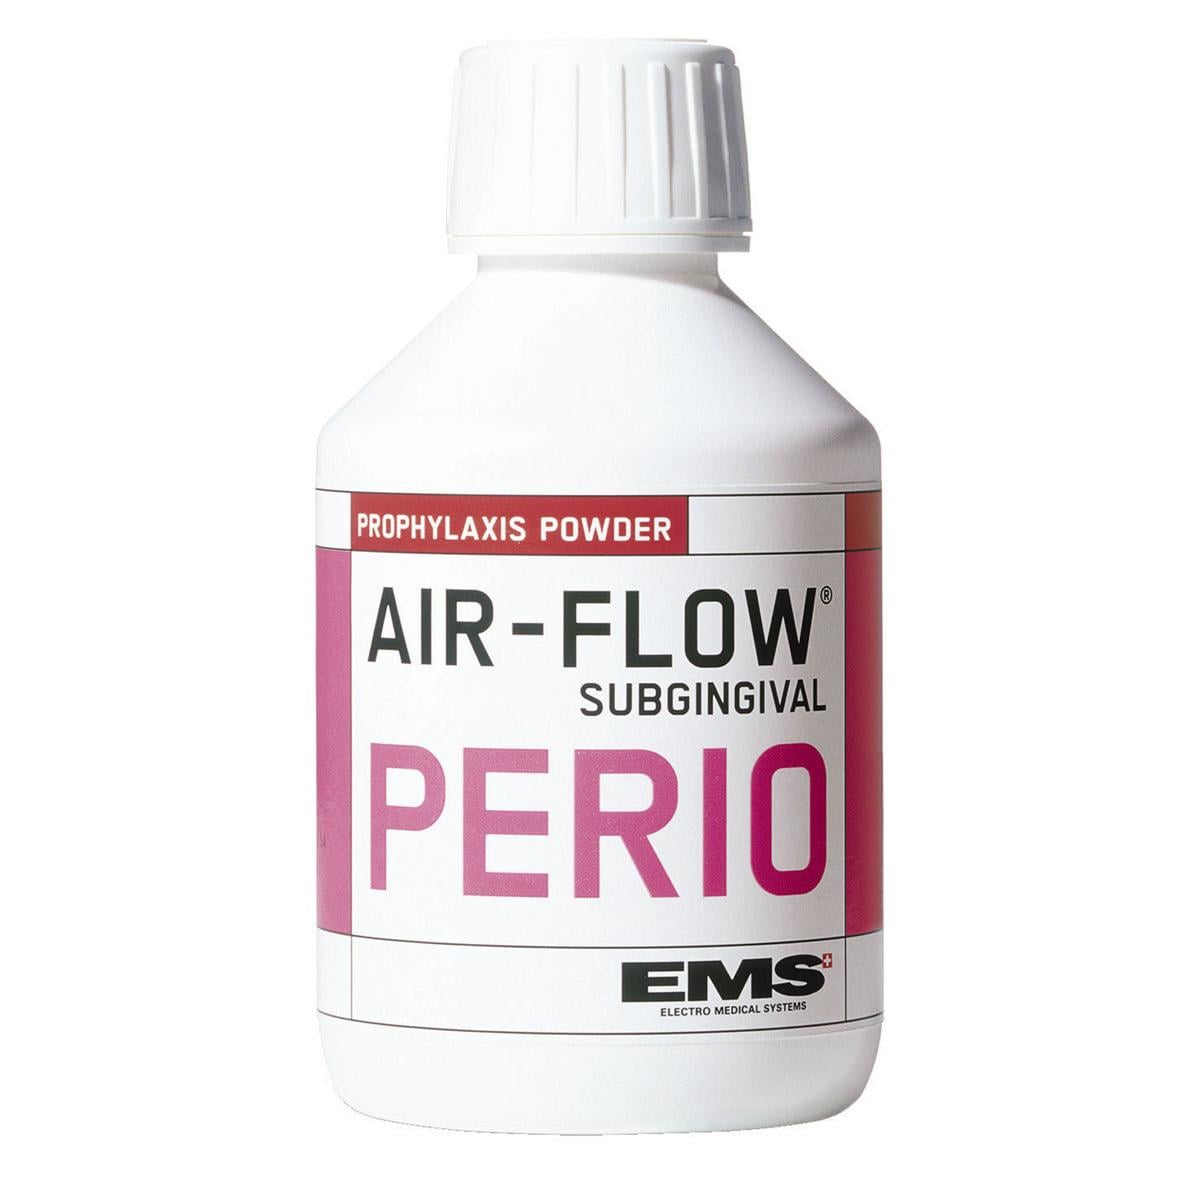 AIR FLOW PERIO - 4 barattoli da 120 g cad. (480 g)